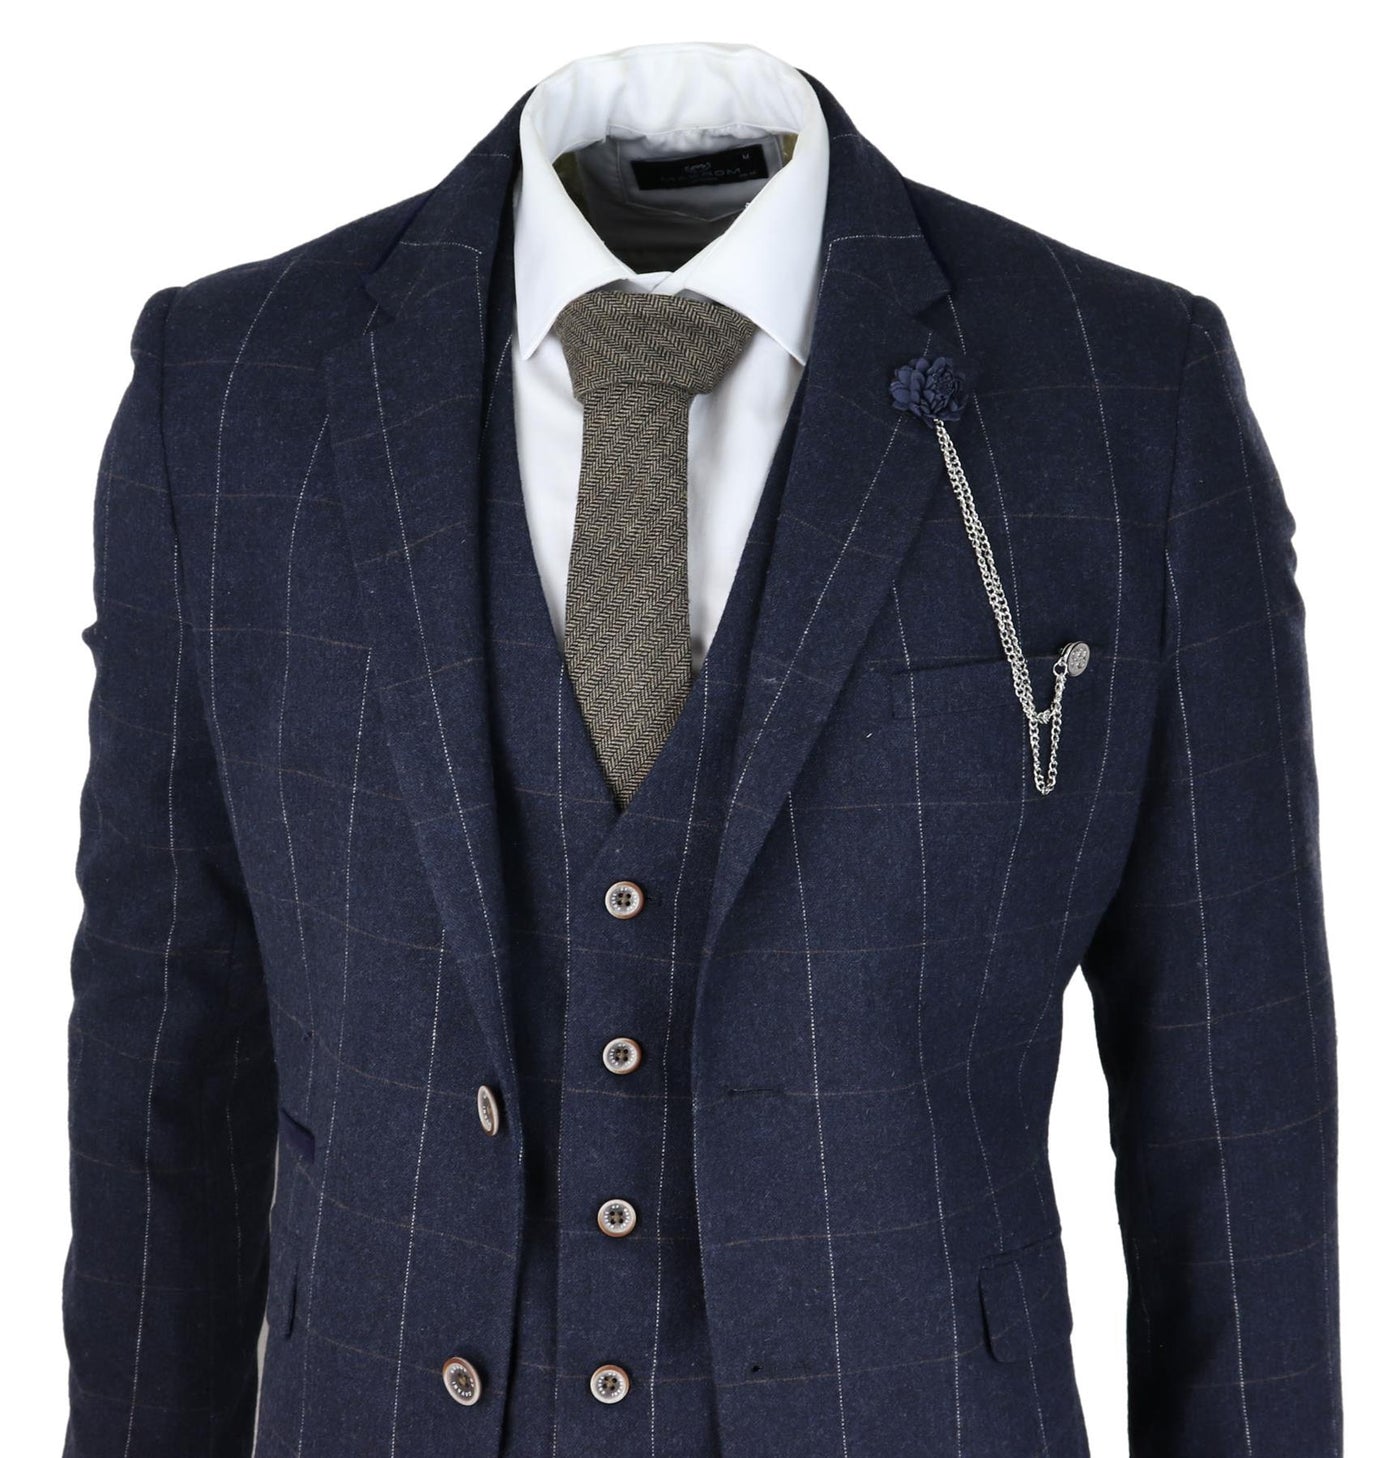 Mens 3 Piece Wool Suit Navy Blue Tweed Check Peaky Blinders 1920 Gatsby Formal